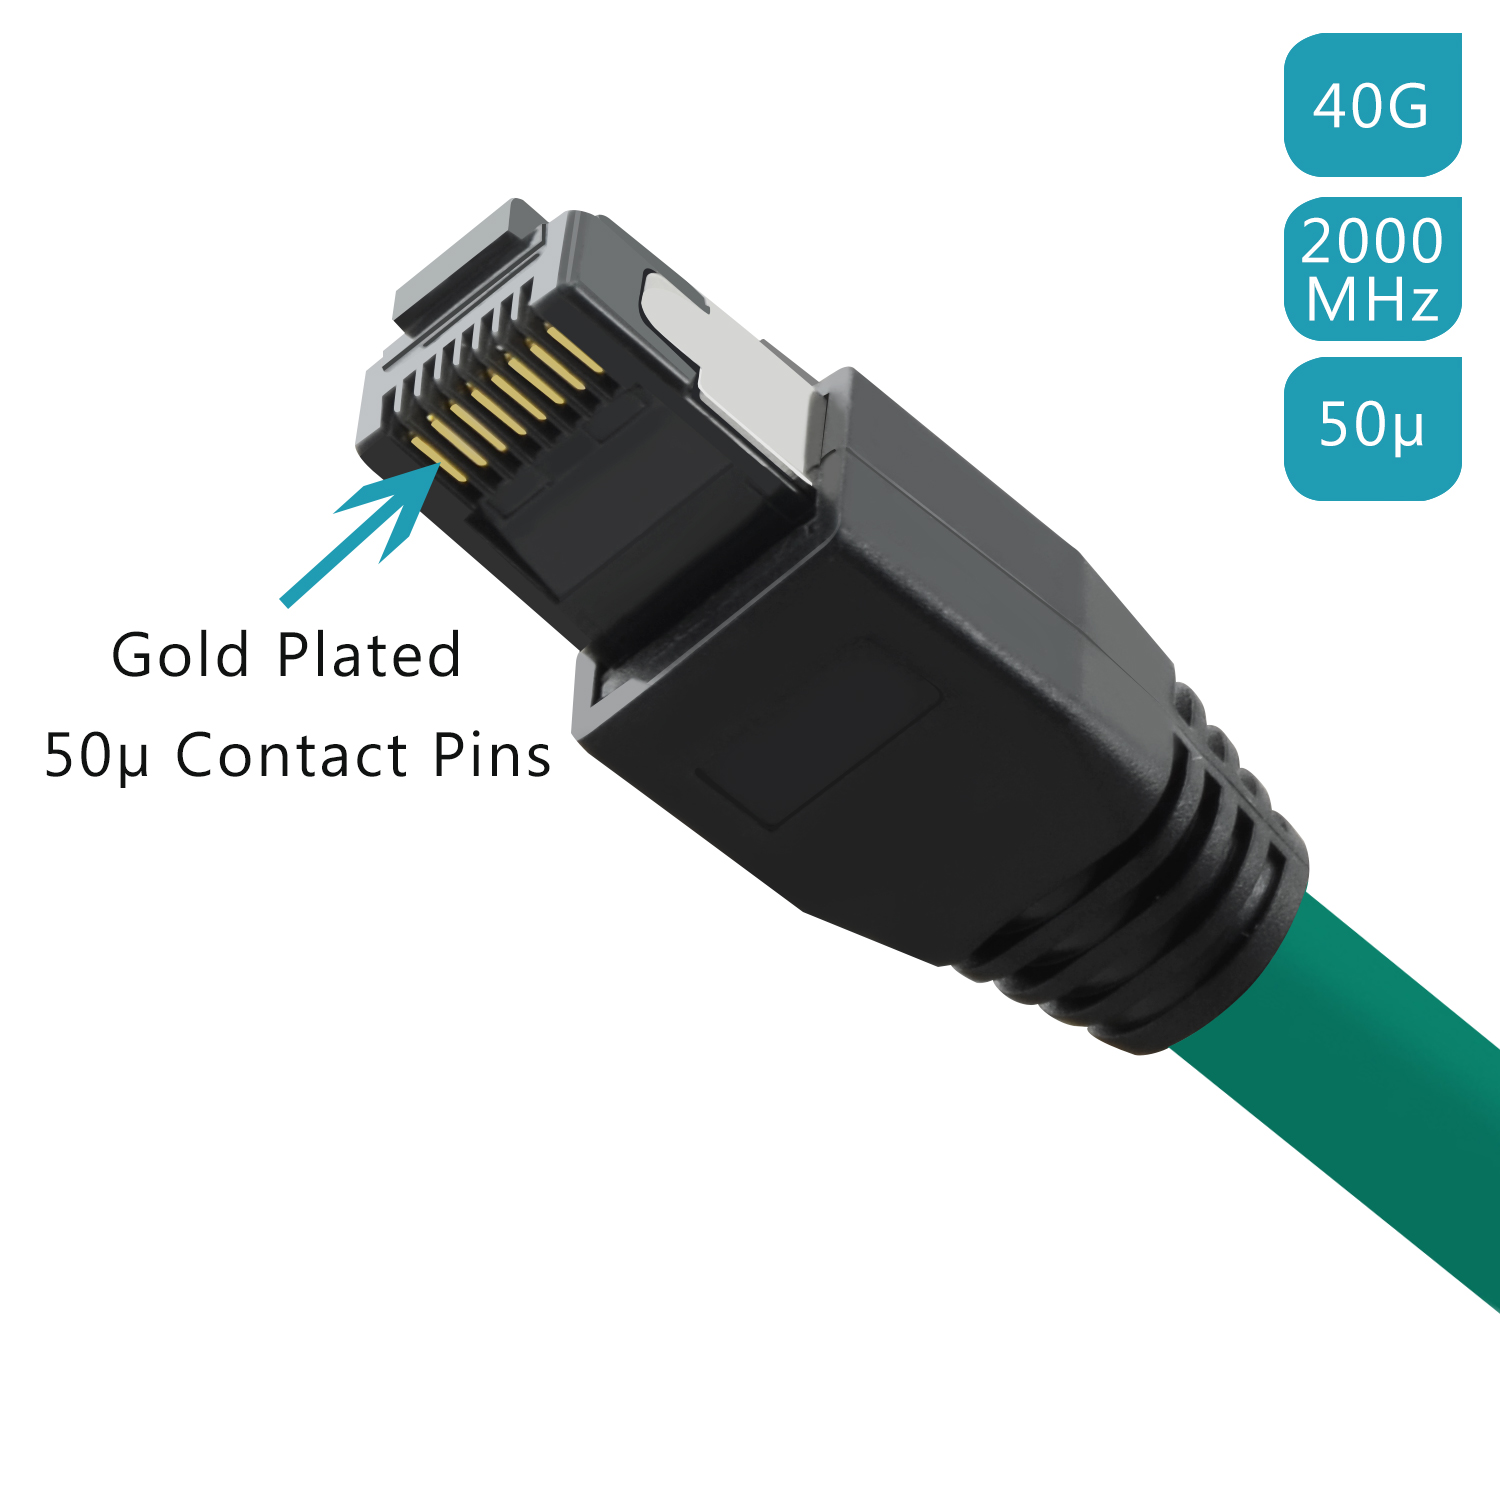 TPFNET 5m Patchkabel / Netzwerkkabel Netzwerkkabel, S/FTP GBit, m 5 grün, 40